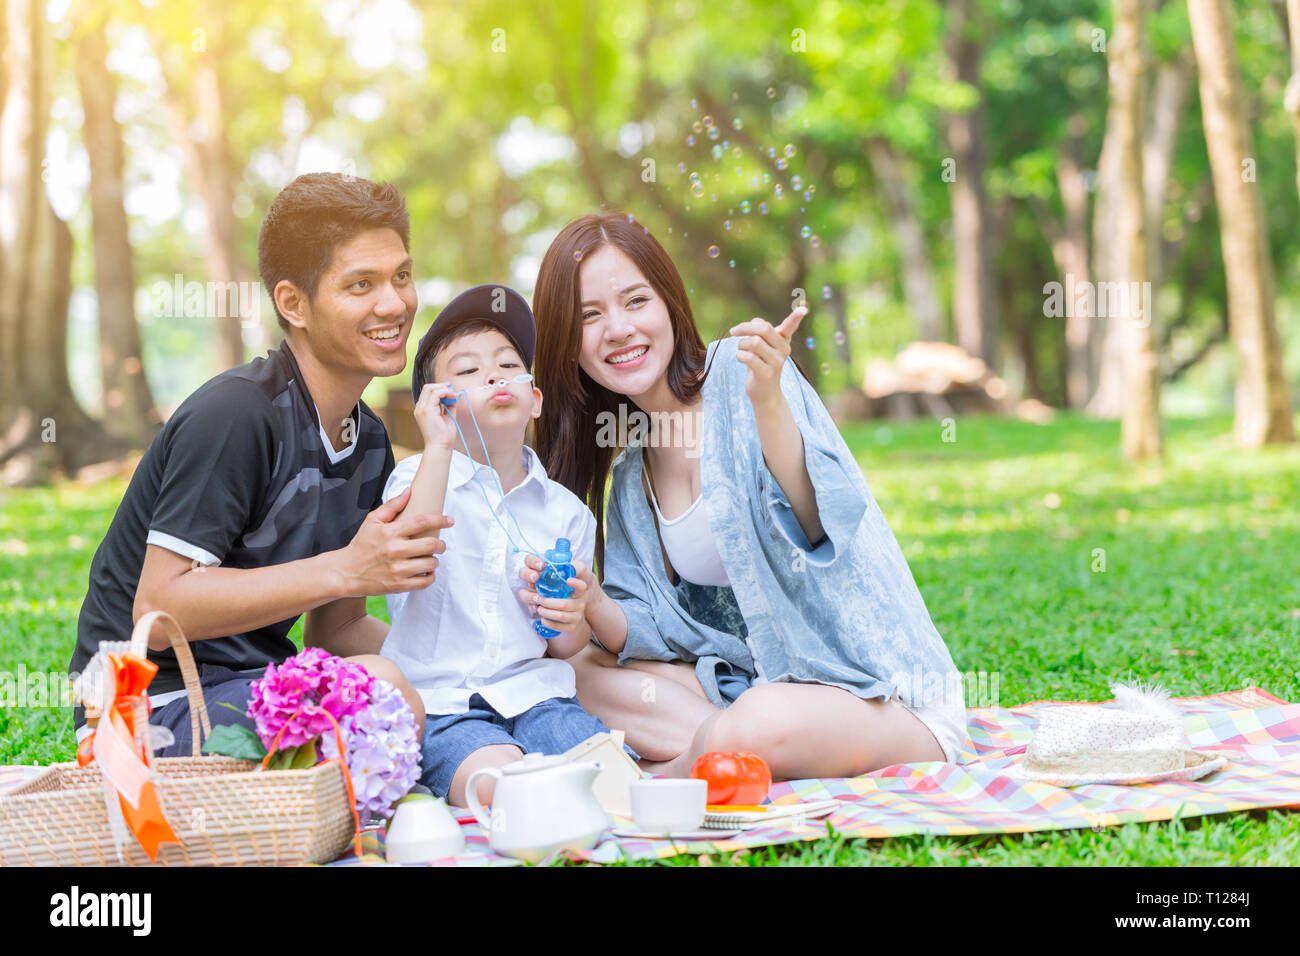 Asiatische Familie glücklich Urlaub mit Kind Mutter und Vater spielen im Park. Stockfoto